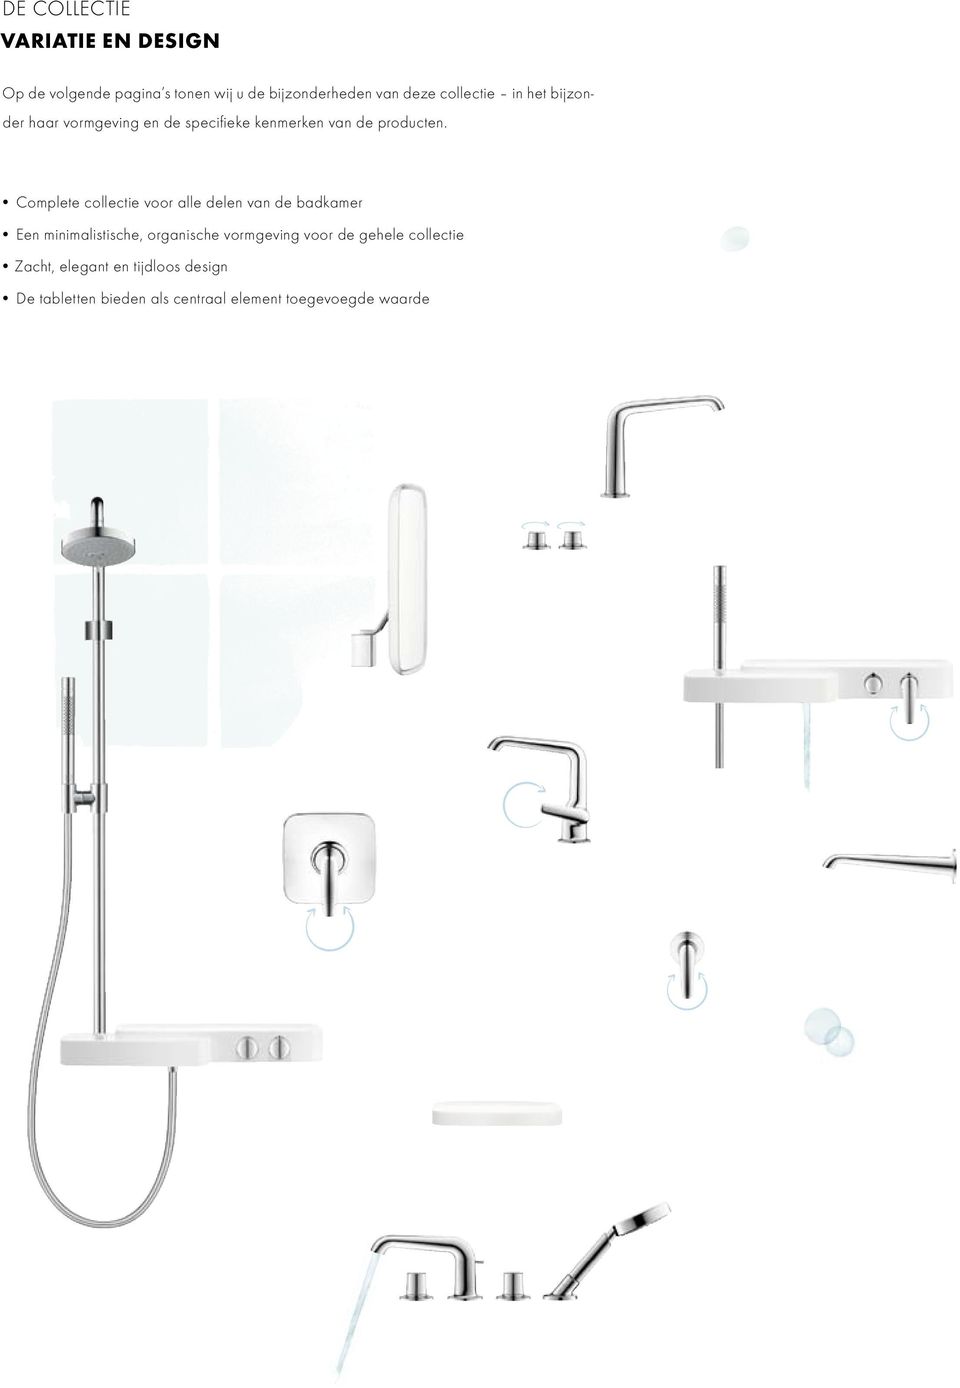 Complete collectie voor alle delen van de badkamer Een minimalistische, organische vormgeving voor